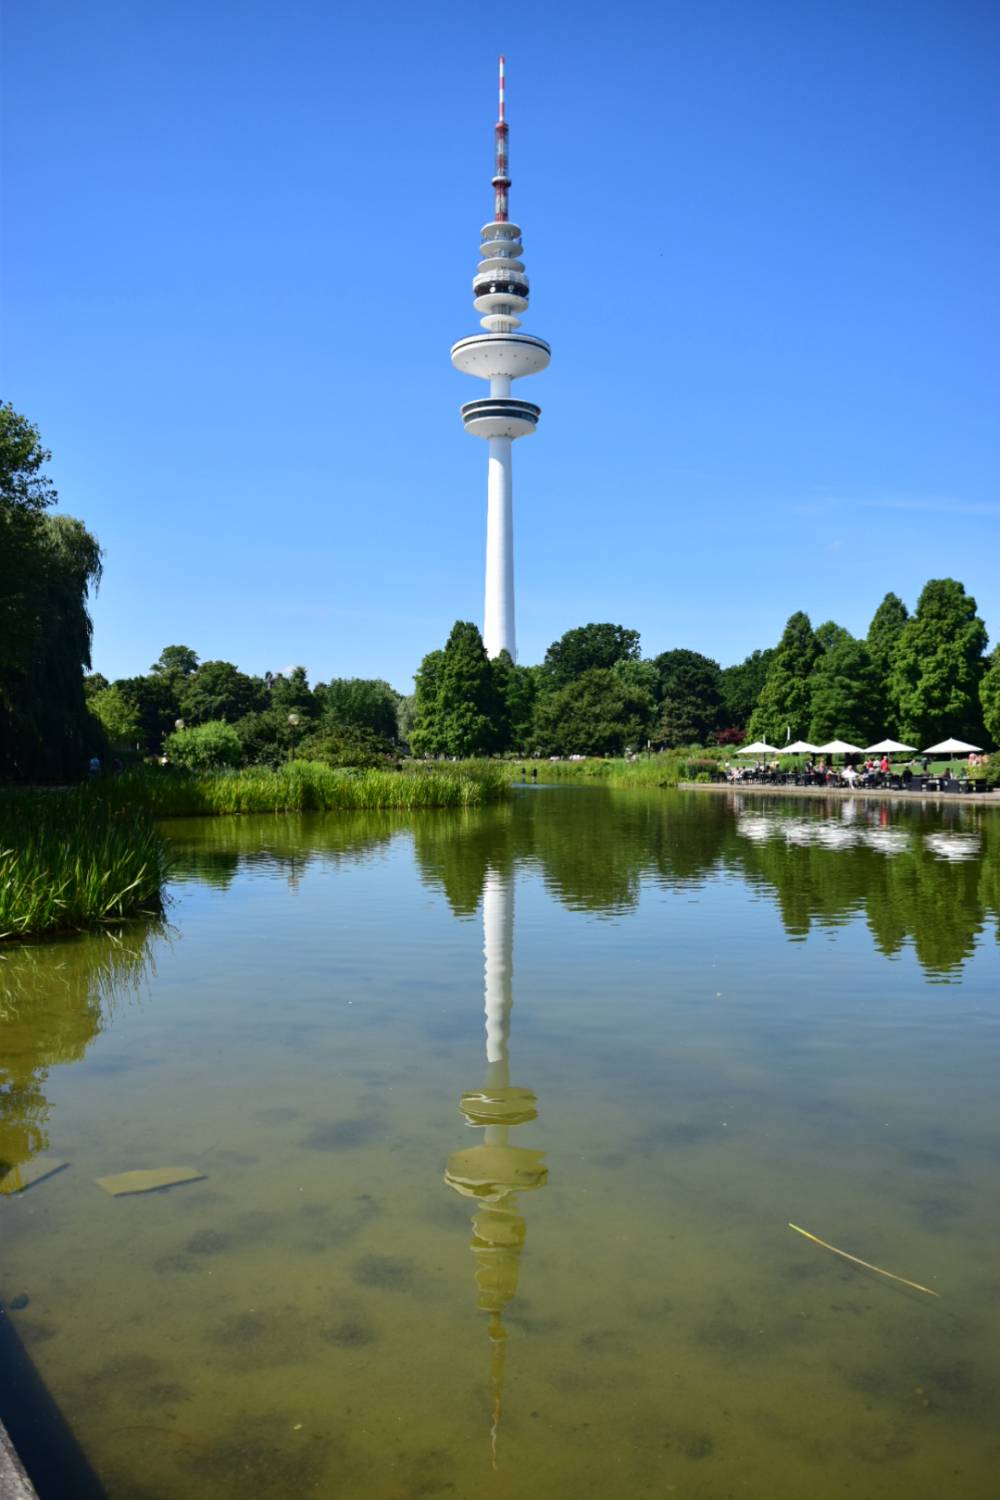 Hamburgs TV Tower